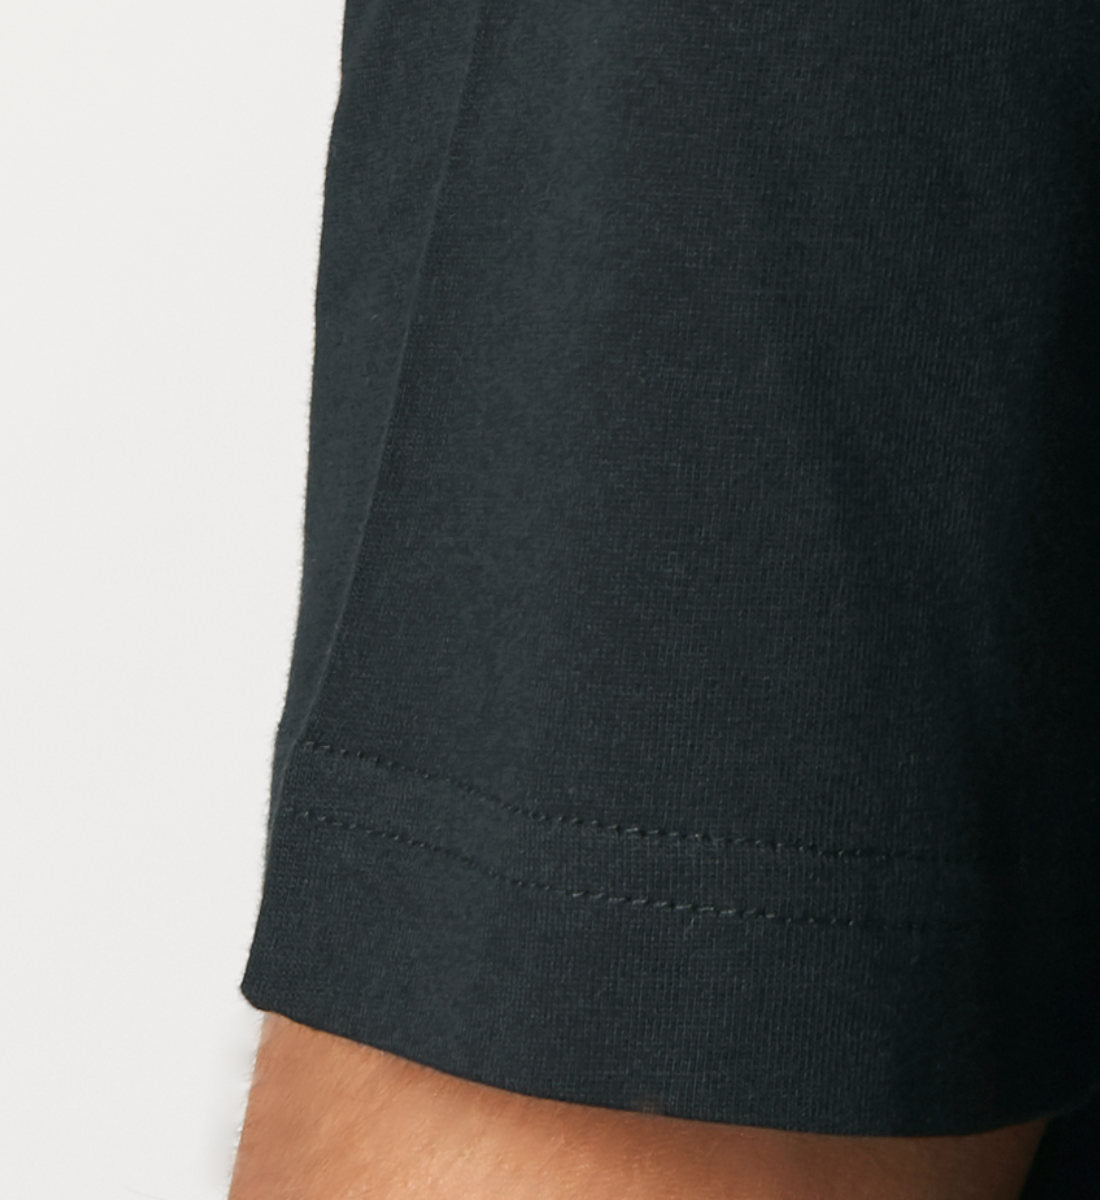 Schwarzes T-Shirt Unisex Relaxed Fit für Frauen und Männer bedruckt mit dem Design der Roger Rockawoo Kollektion monday is a whore